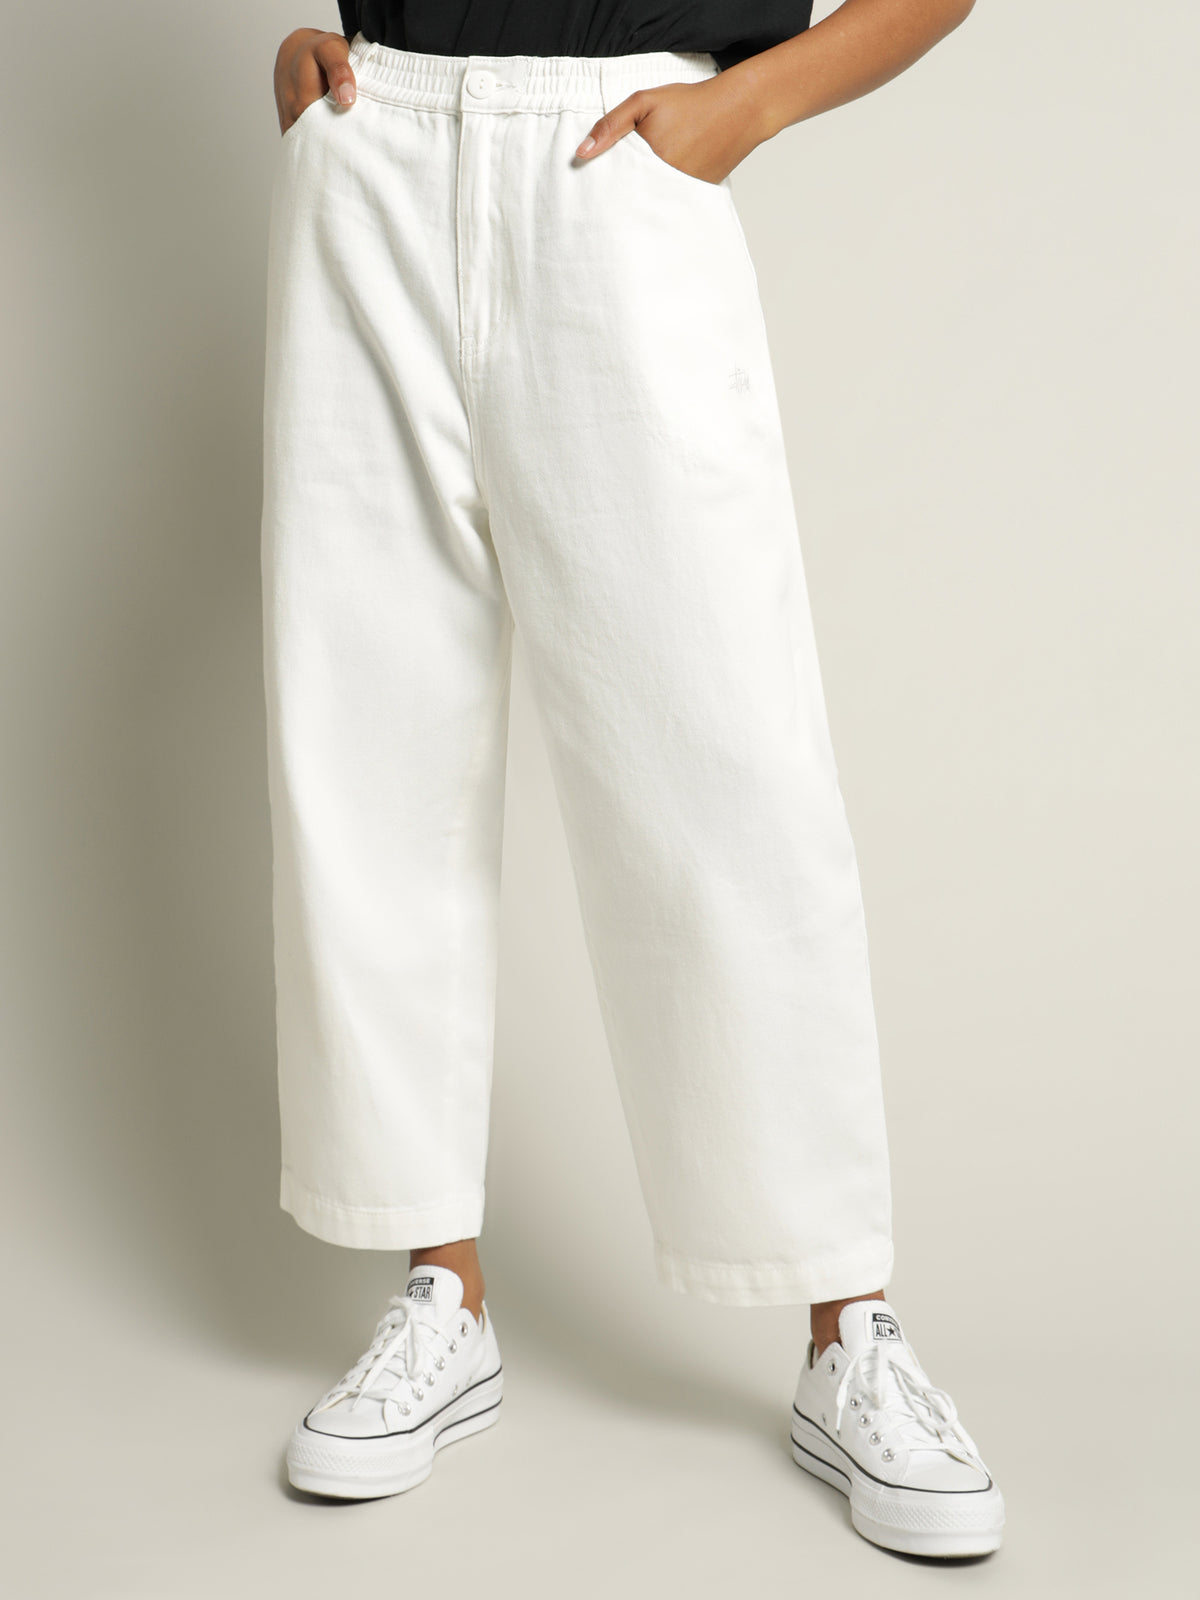 Workgear Pants in White